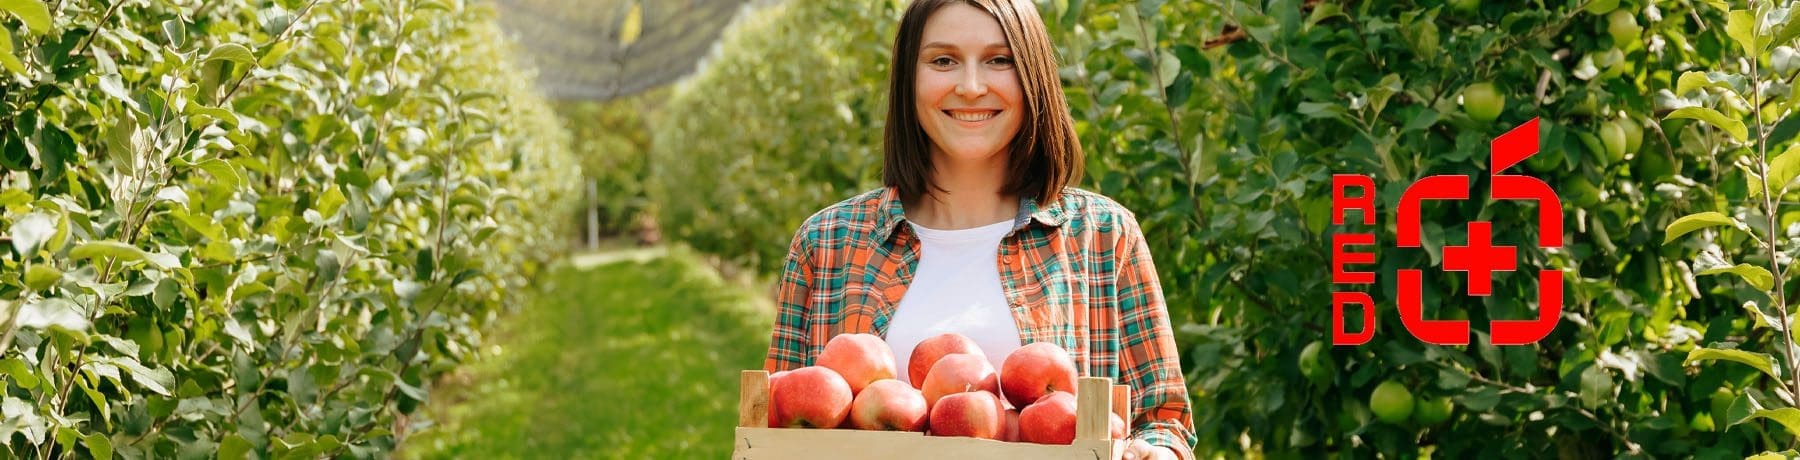 Redpower: Egészséges almalé különleges gyógynövényekkel a Mastery kínálatában